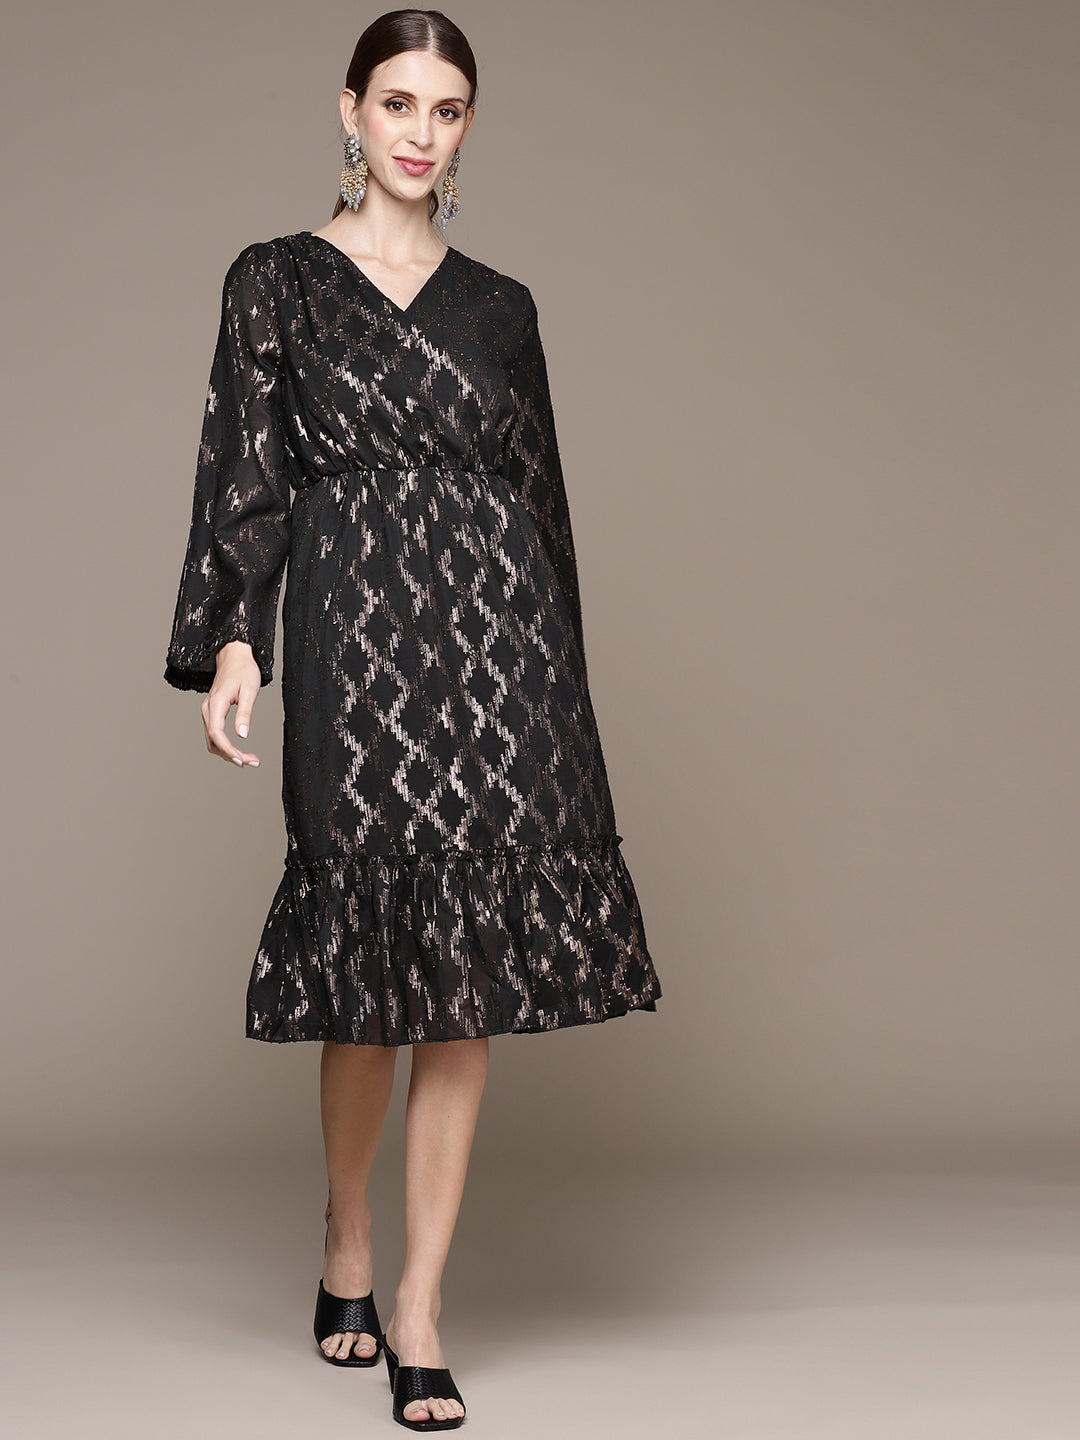 Ishin Women's Black Shimmer Wrap Tiered Dress